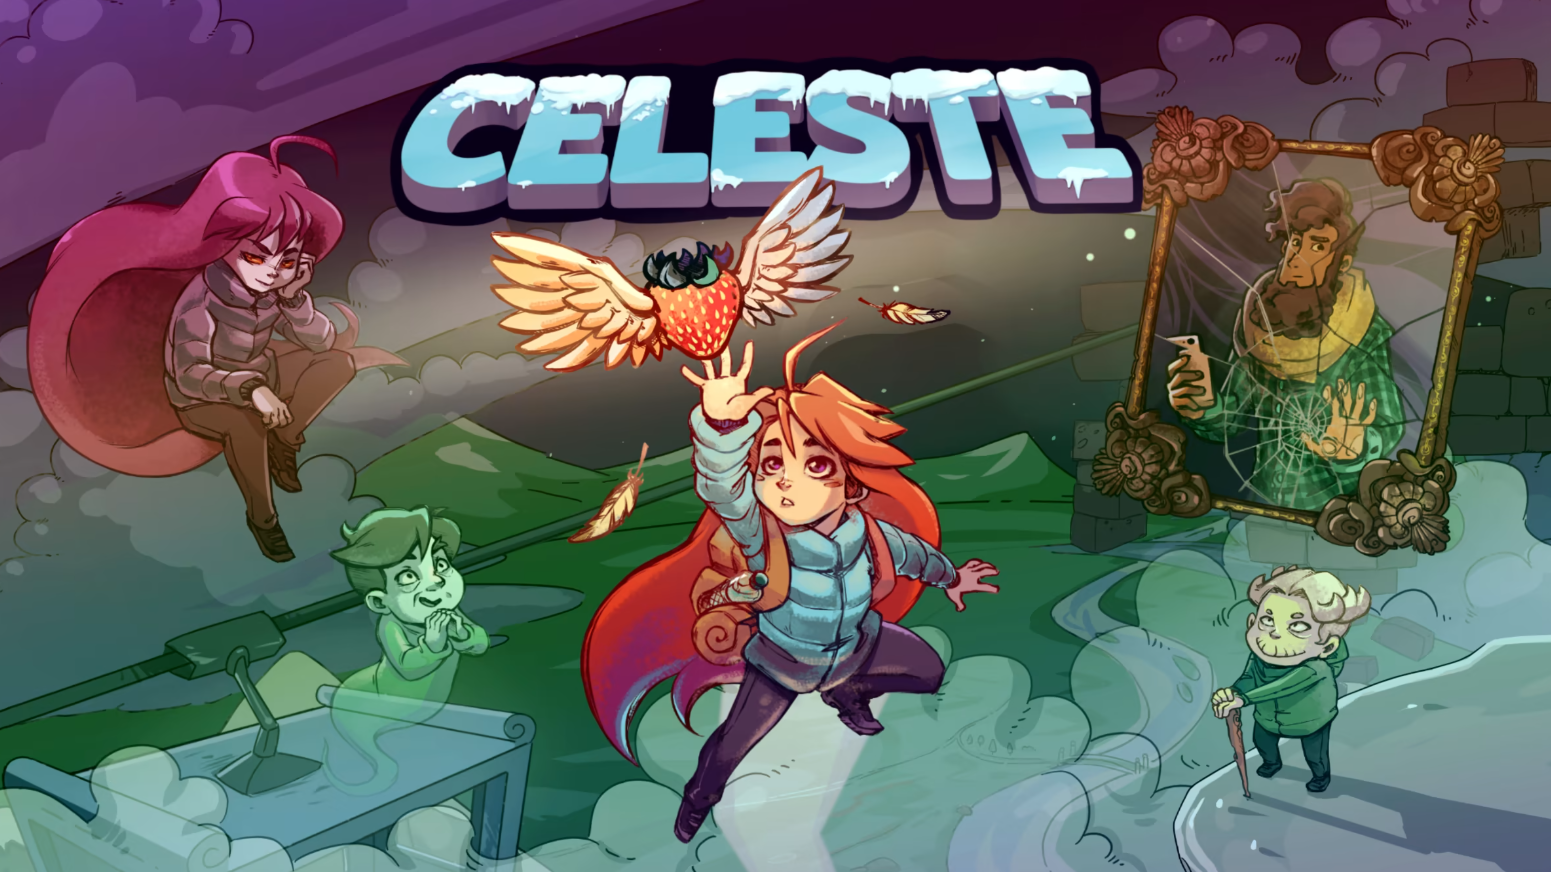 Suba às alturas: Descubra uma grande aventura em Celeste!